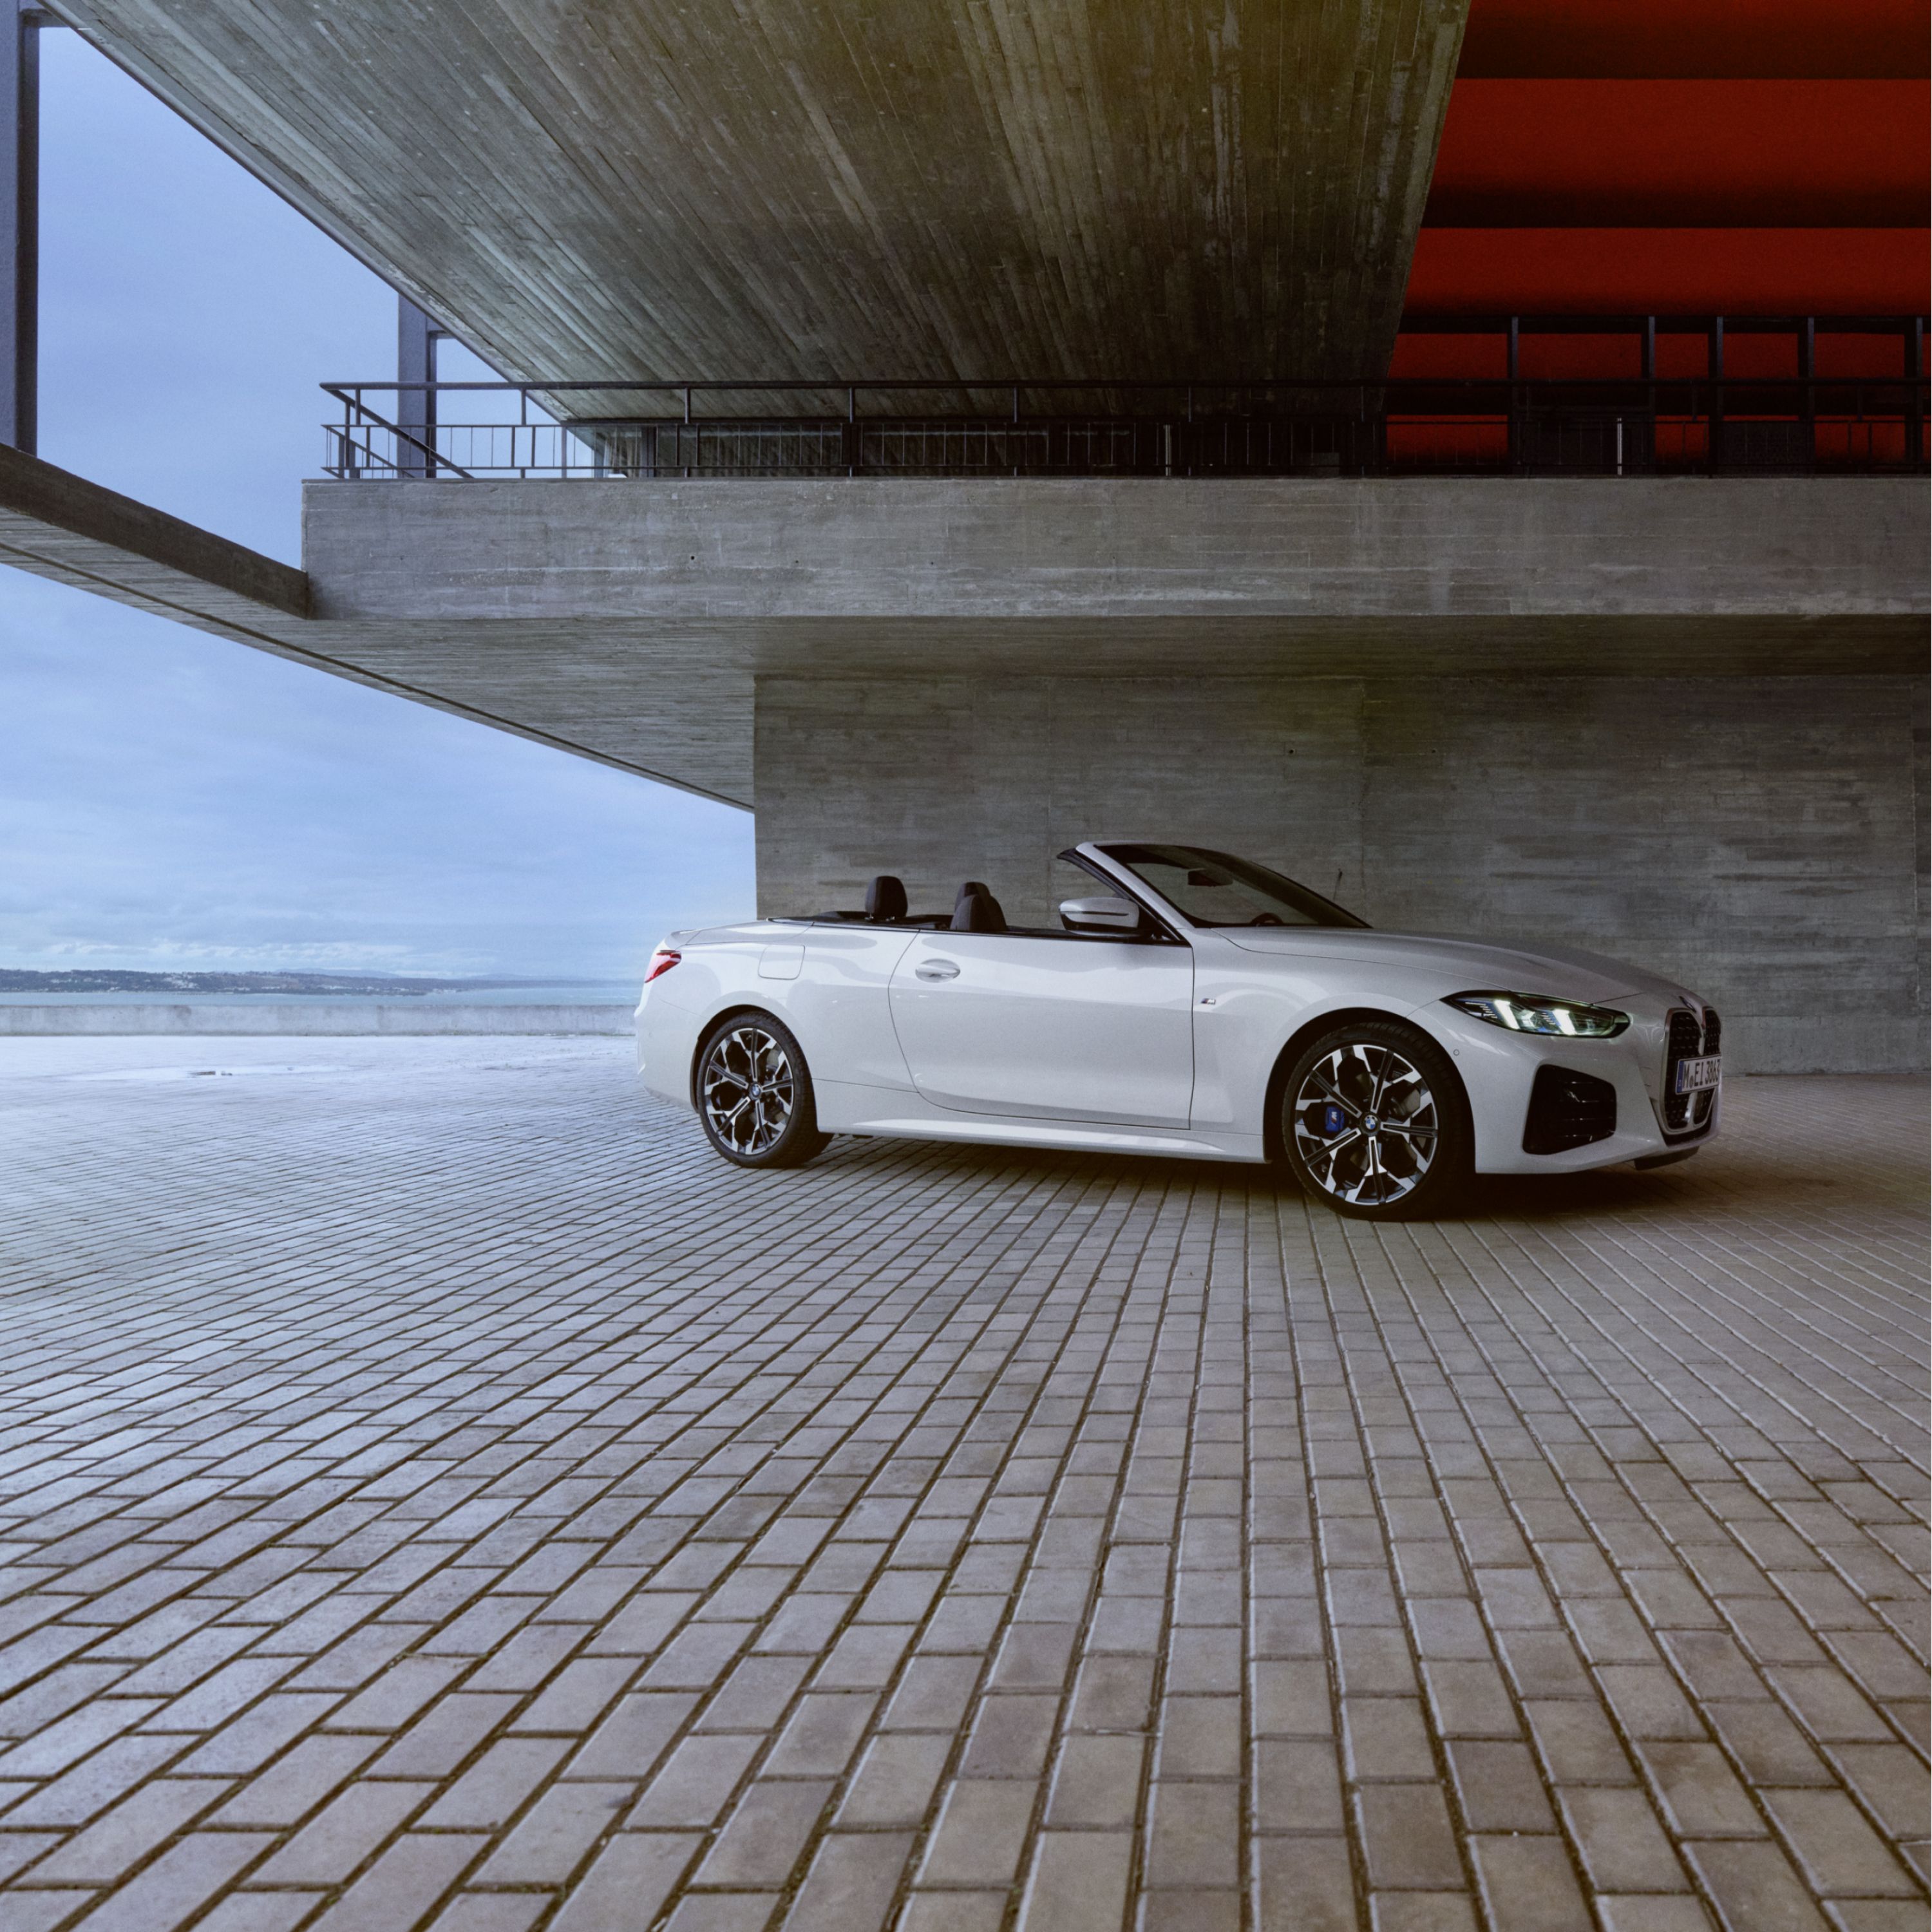  BMW 4 Cabrio kristályfehér színben